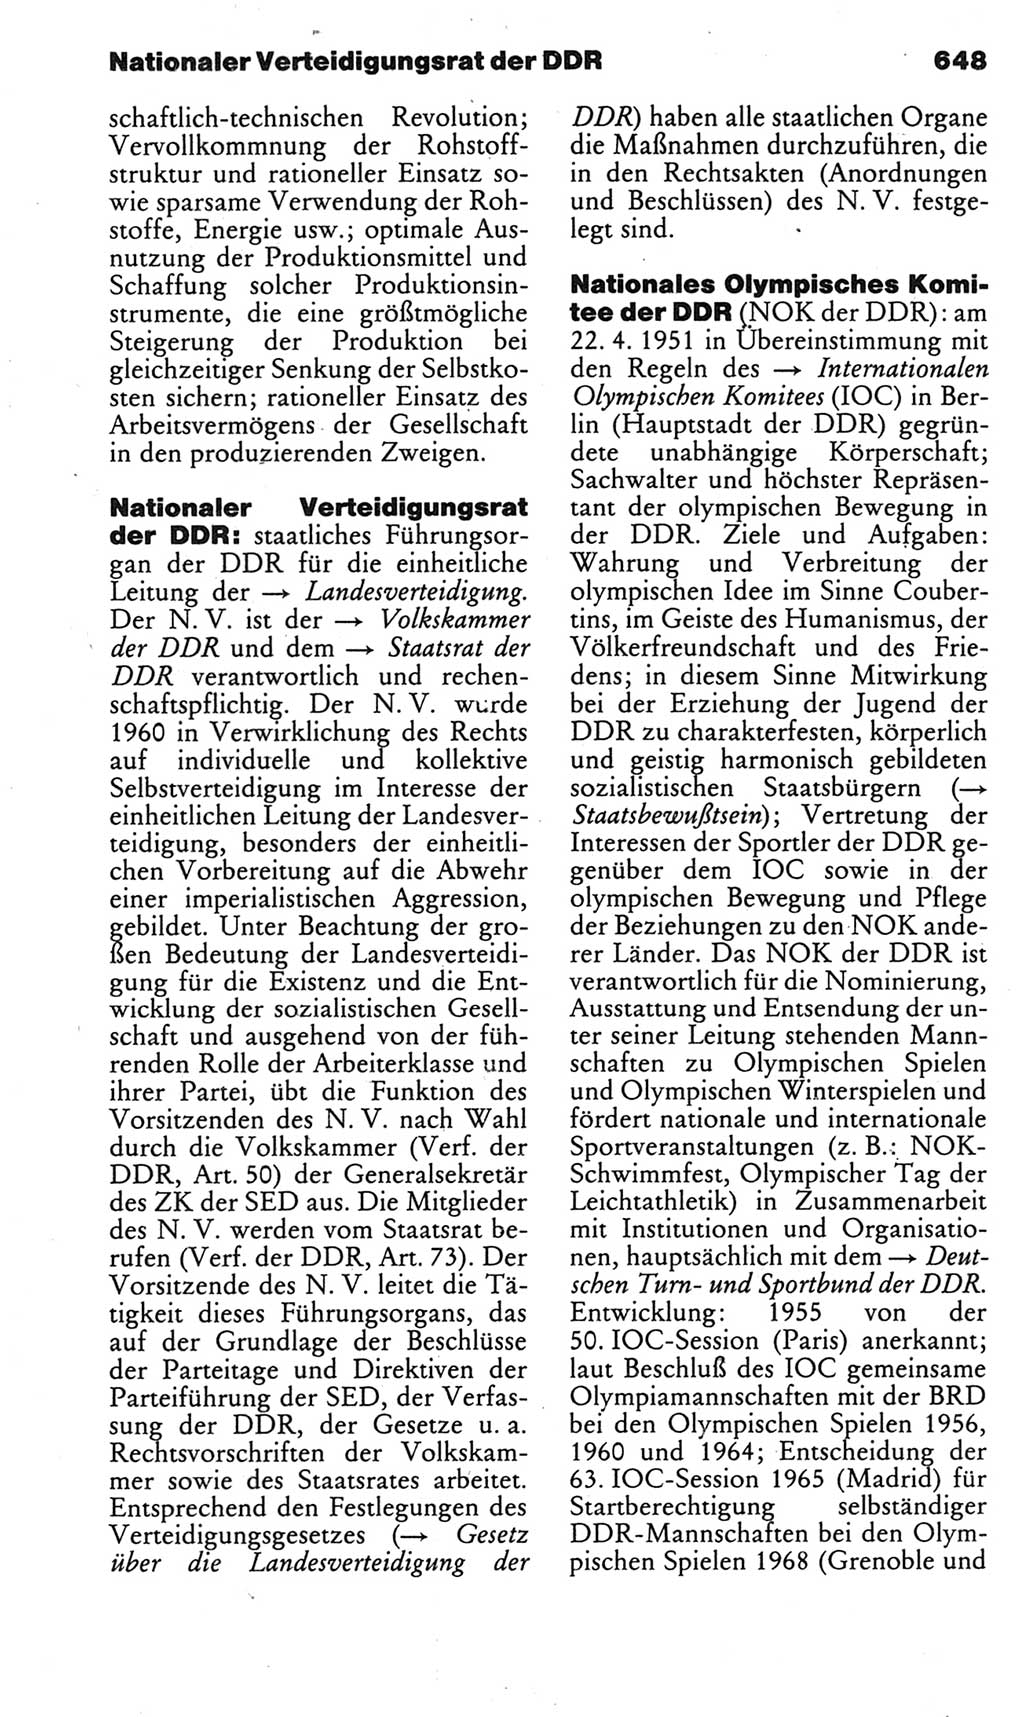 Kleines politisches Wörterbuch [Deutsche Demokratische Republik (DDR)] 1983, Seite 648 (Kl. pol. Wb. DDR 1983, S. 648)